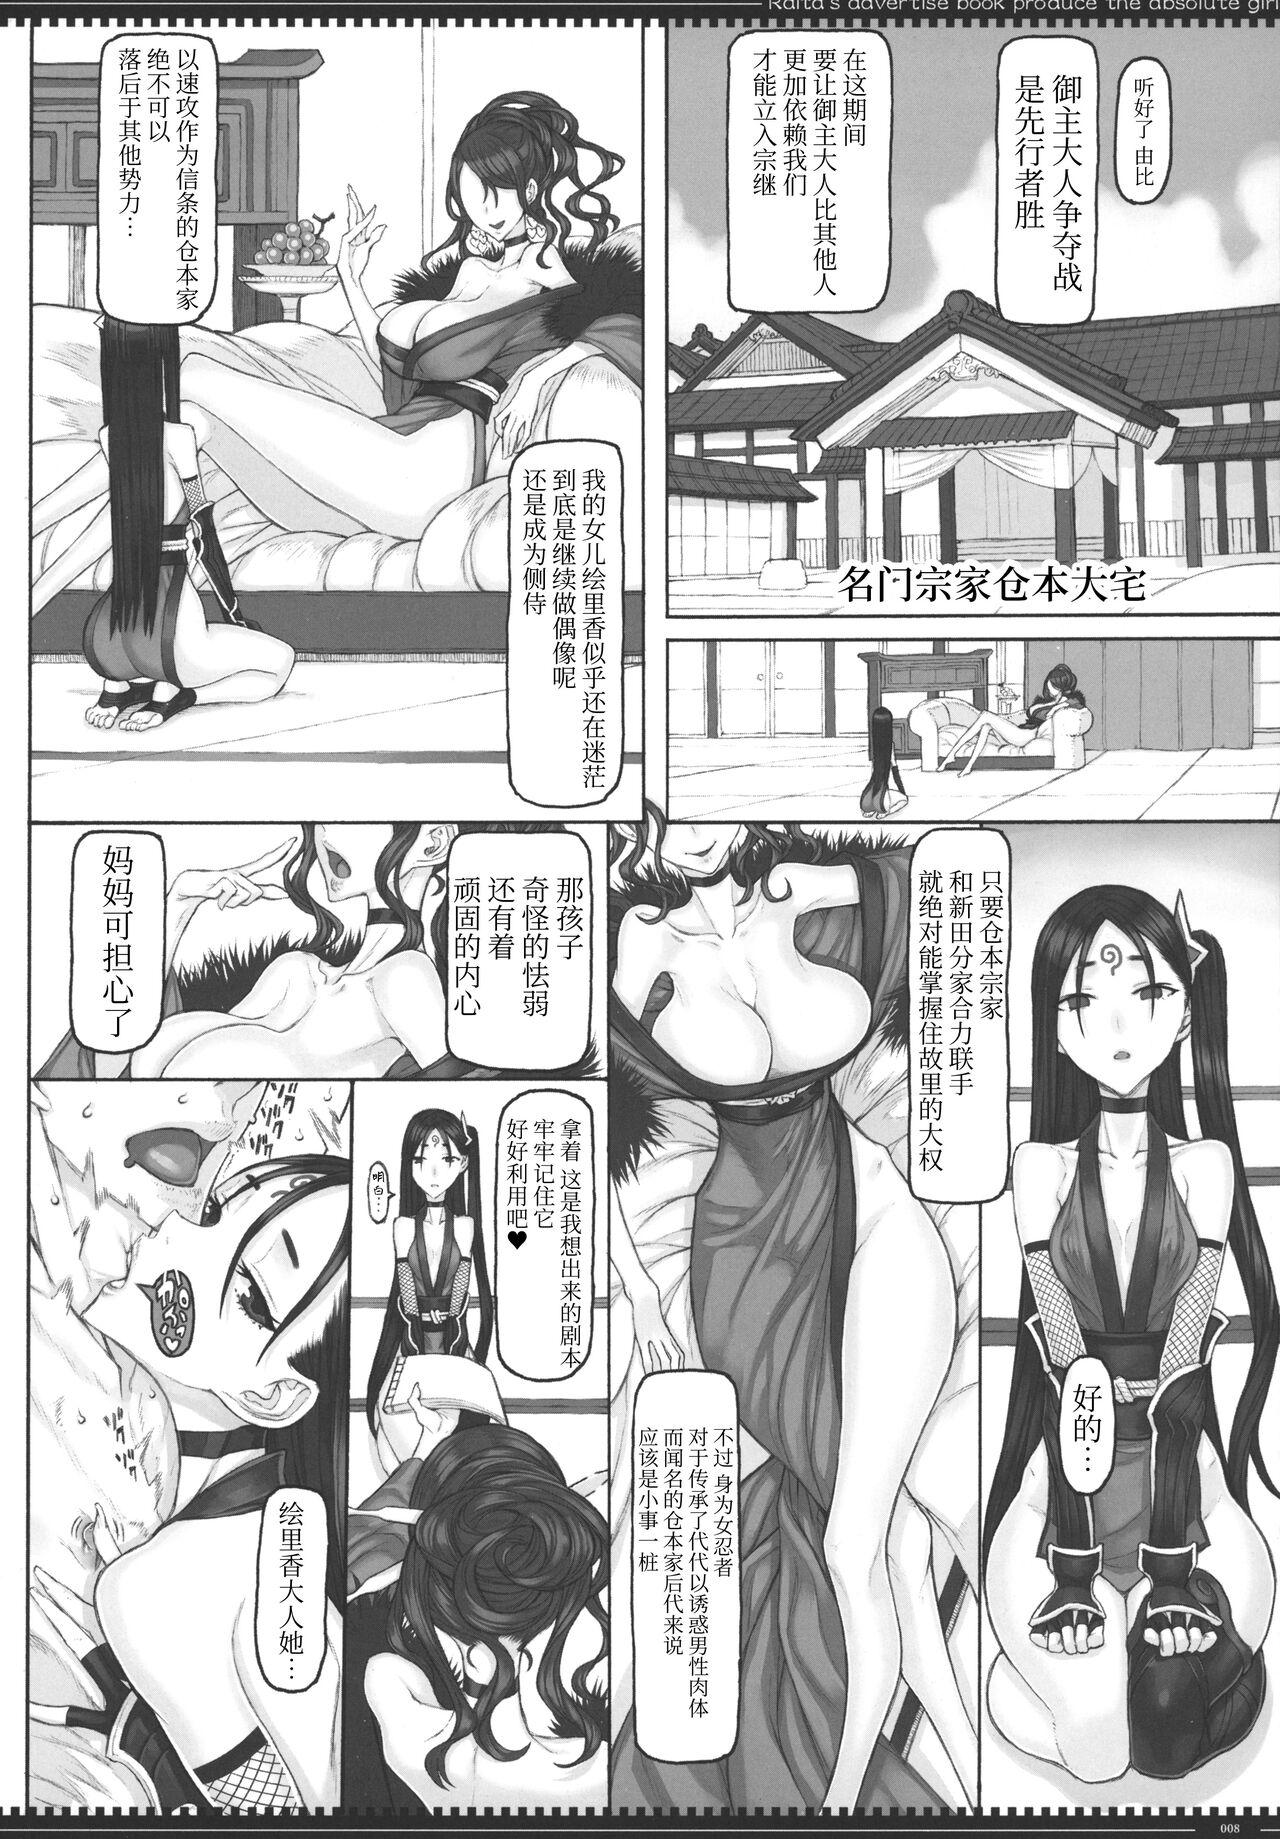 Suck Mahou Shoujo 22.0 + C101 Kaijou Gentei Orihon - Zettai junpaku mahou shoujo Free Fuck - Page 7